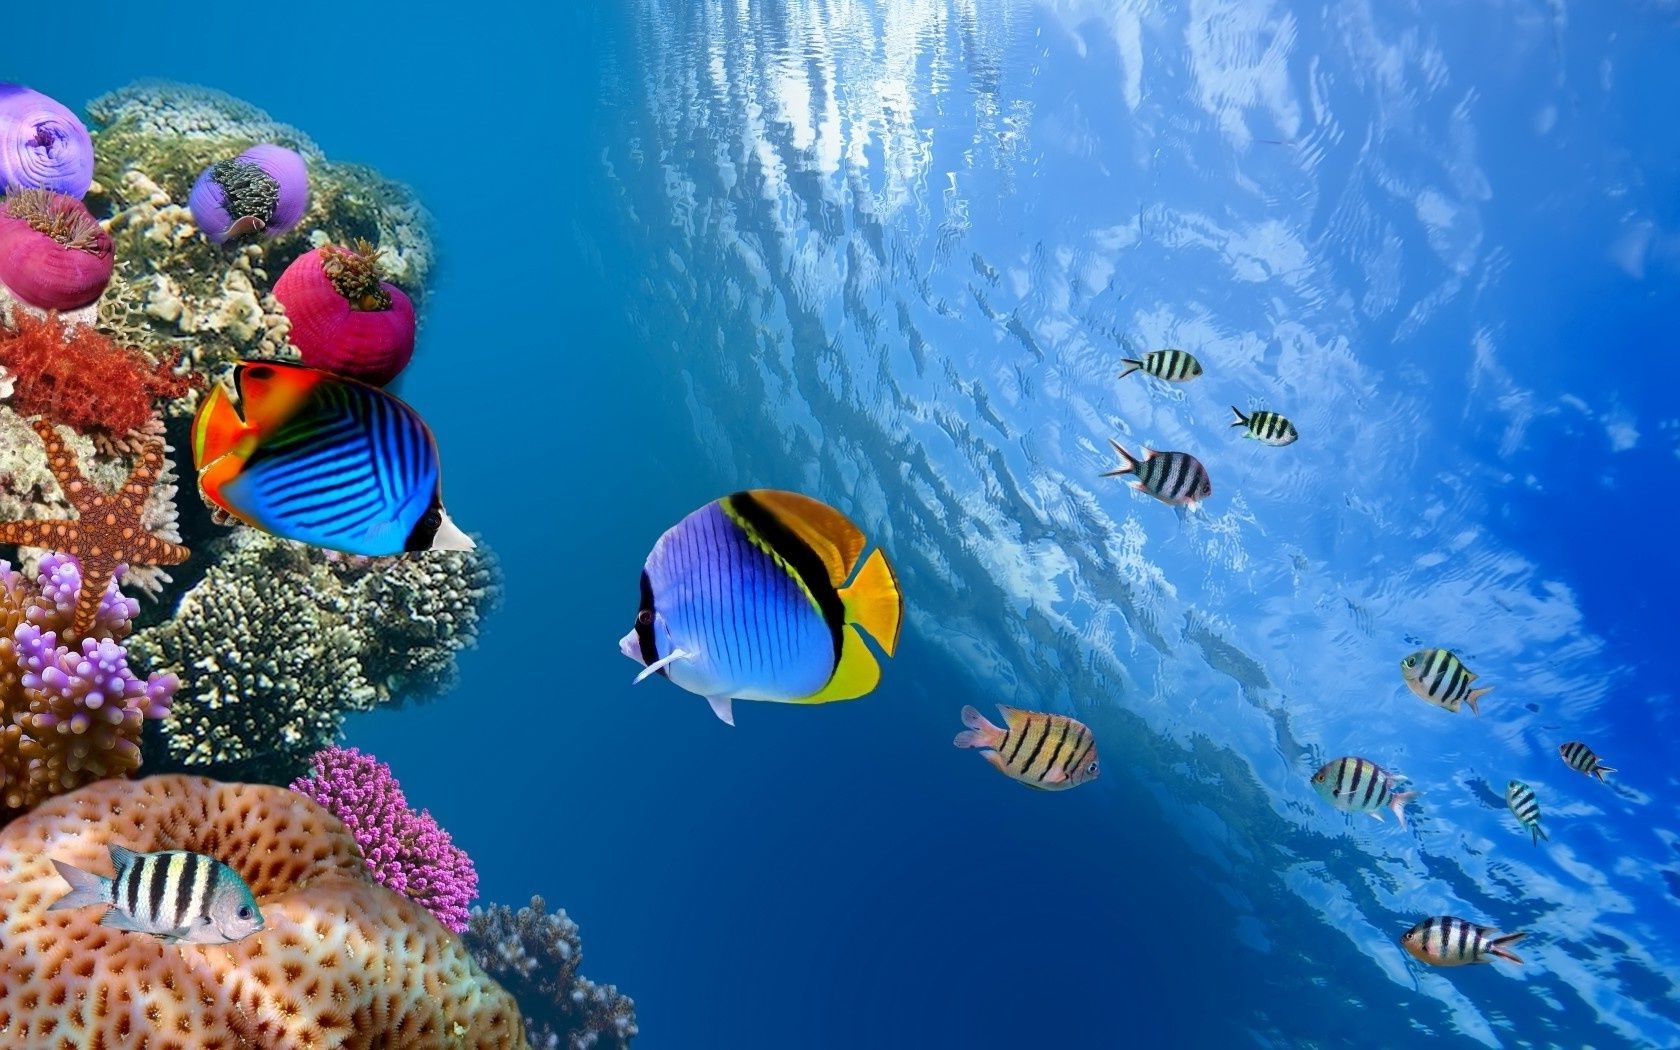 животные подводный рыбы коралловый риф океан тропический воды аквариум дайвинг море плавание глубокий морской природа подводная лодка снорклинг беспозвоночных дикой природы глубина